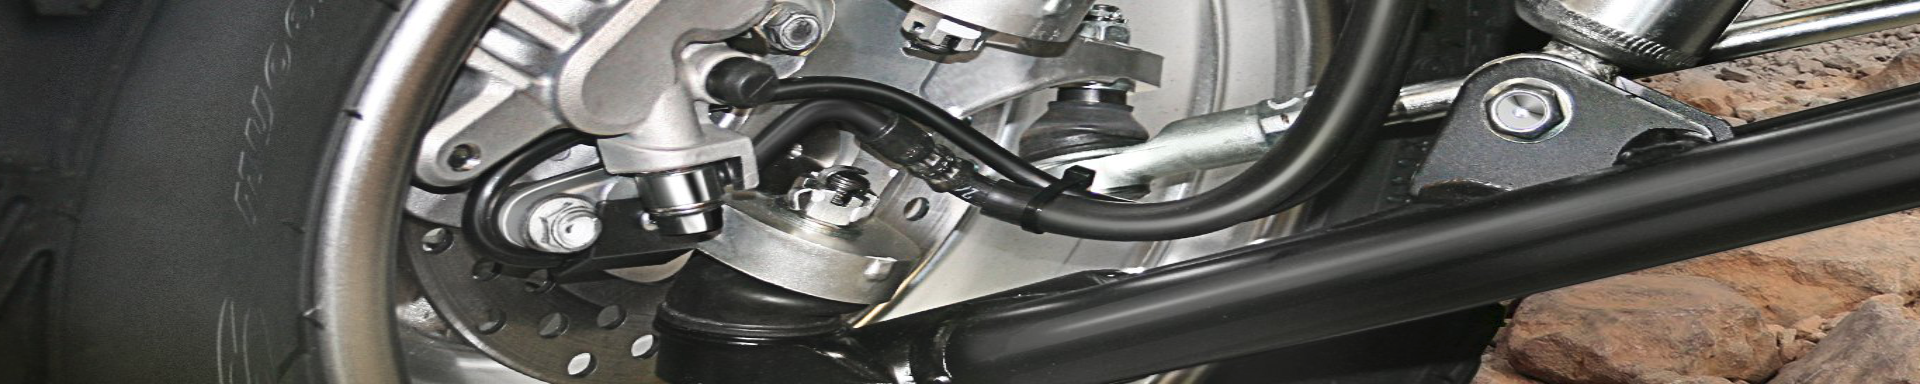 Brake & Speed Sensors | MunroPowersports.com | Munro Industries mp-100803080301